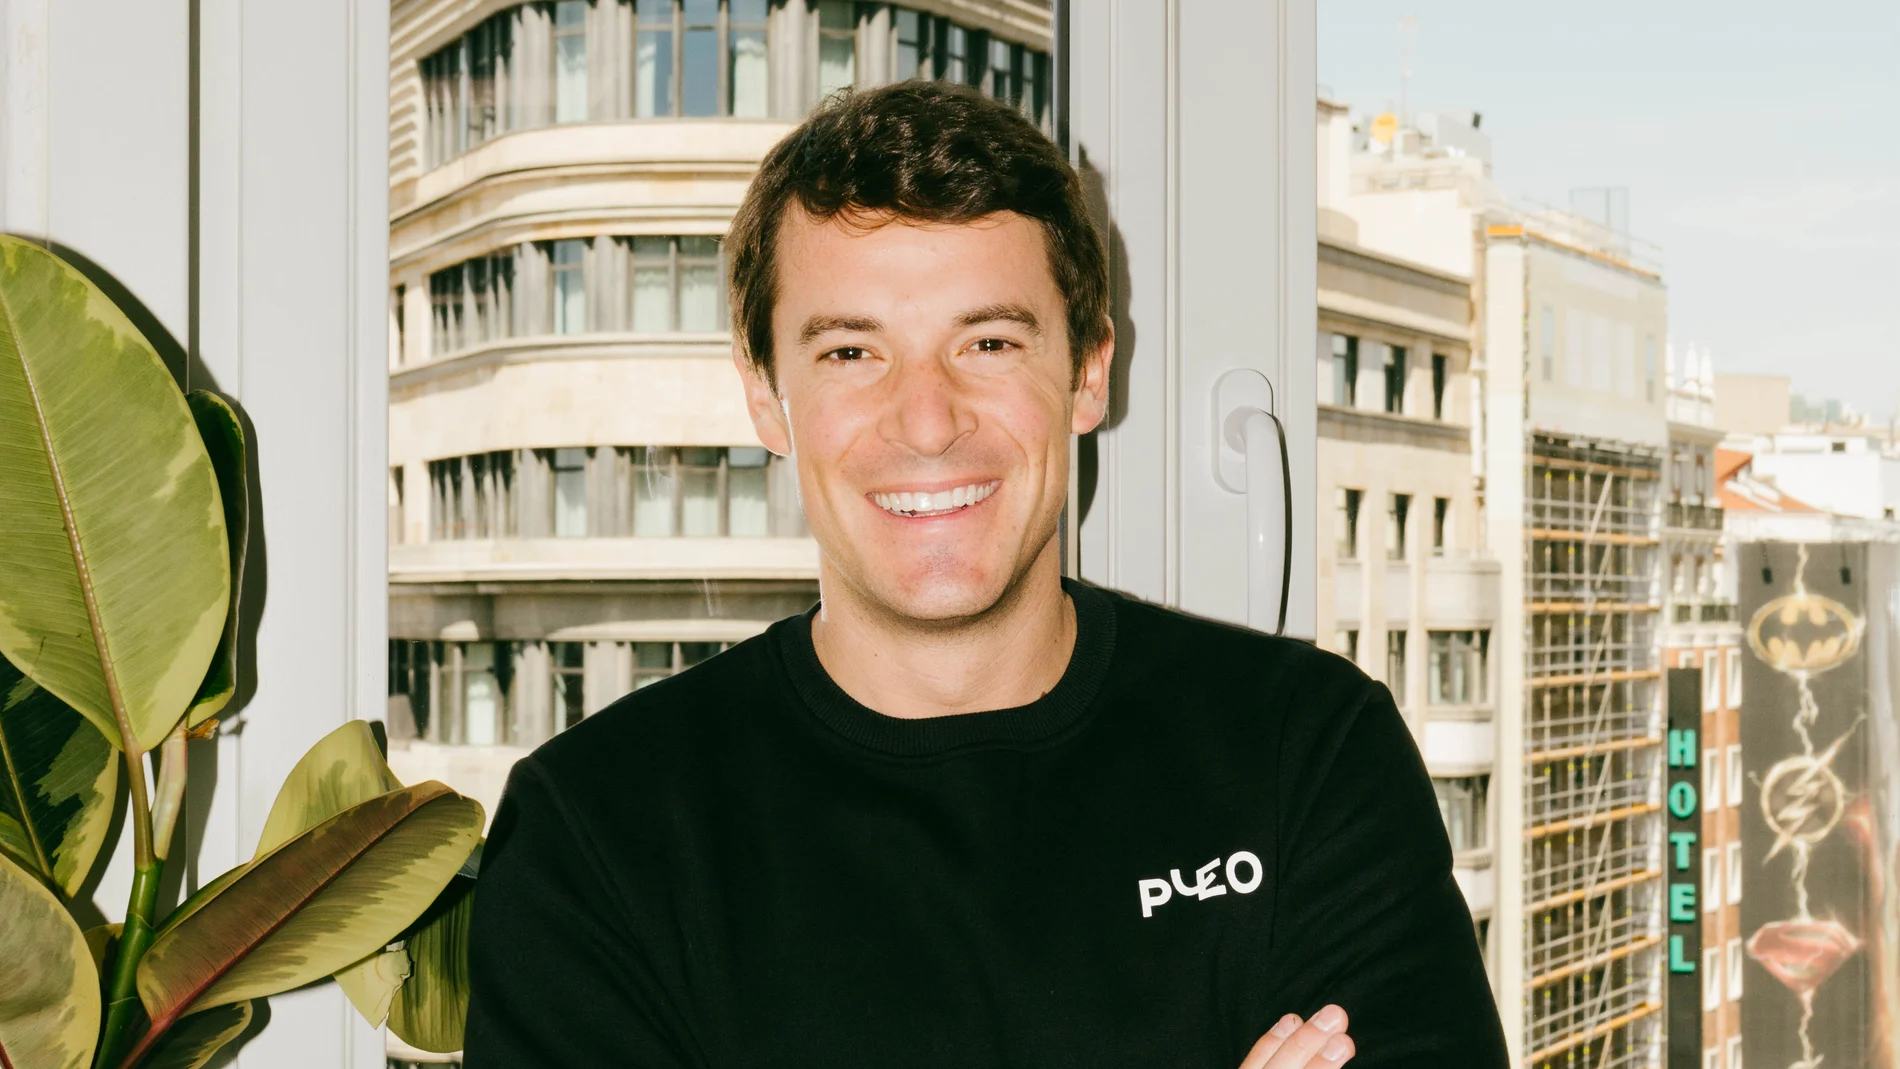 Alvaro Dexeus, Director de Pleo para el Sur de Europa